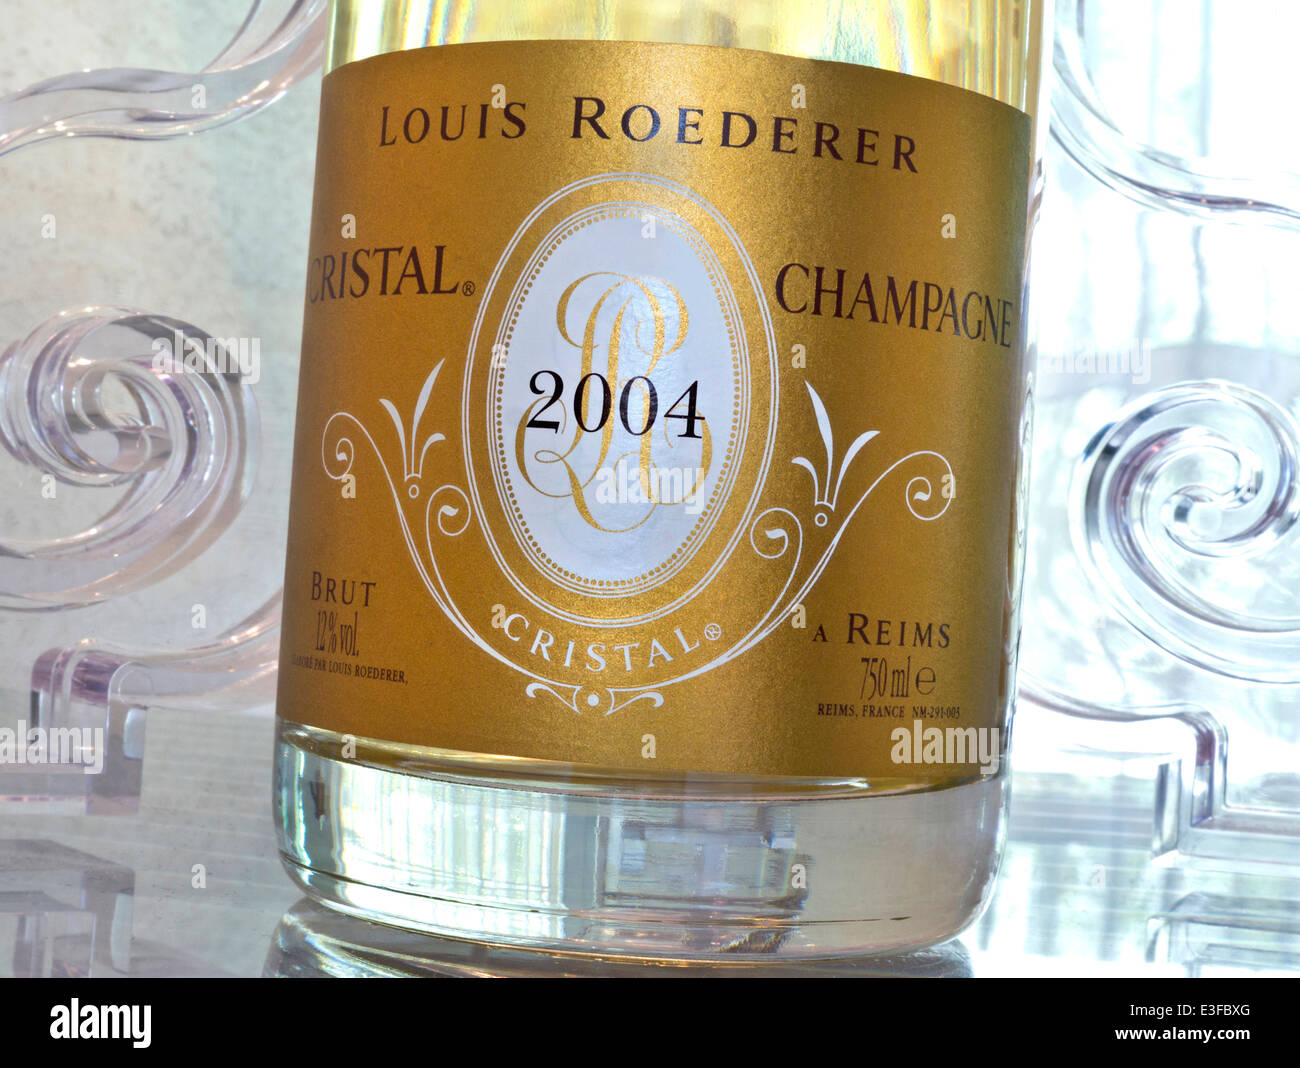 Bouteille de Louis Roederer Cristal 2004 champagne de luxe dans le luxe bar dîner situation Banque D'Images